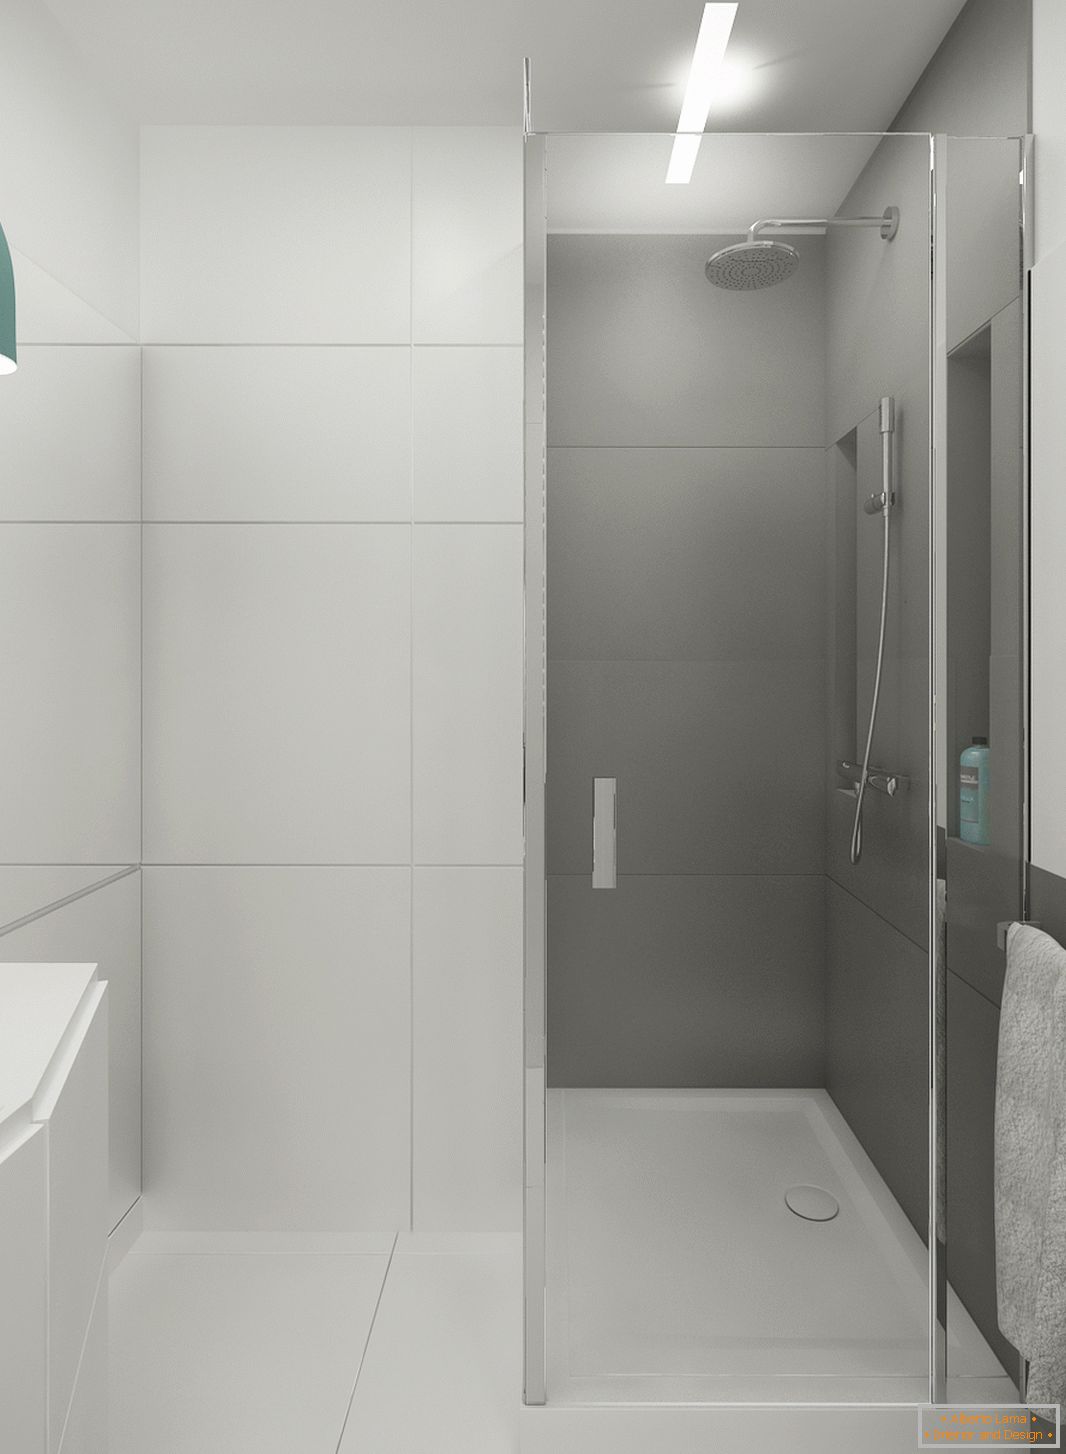 Salle de bain en couleur blanche